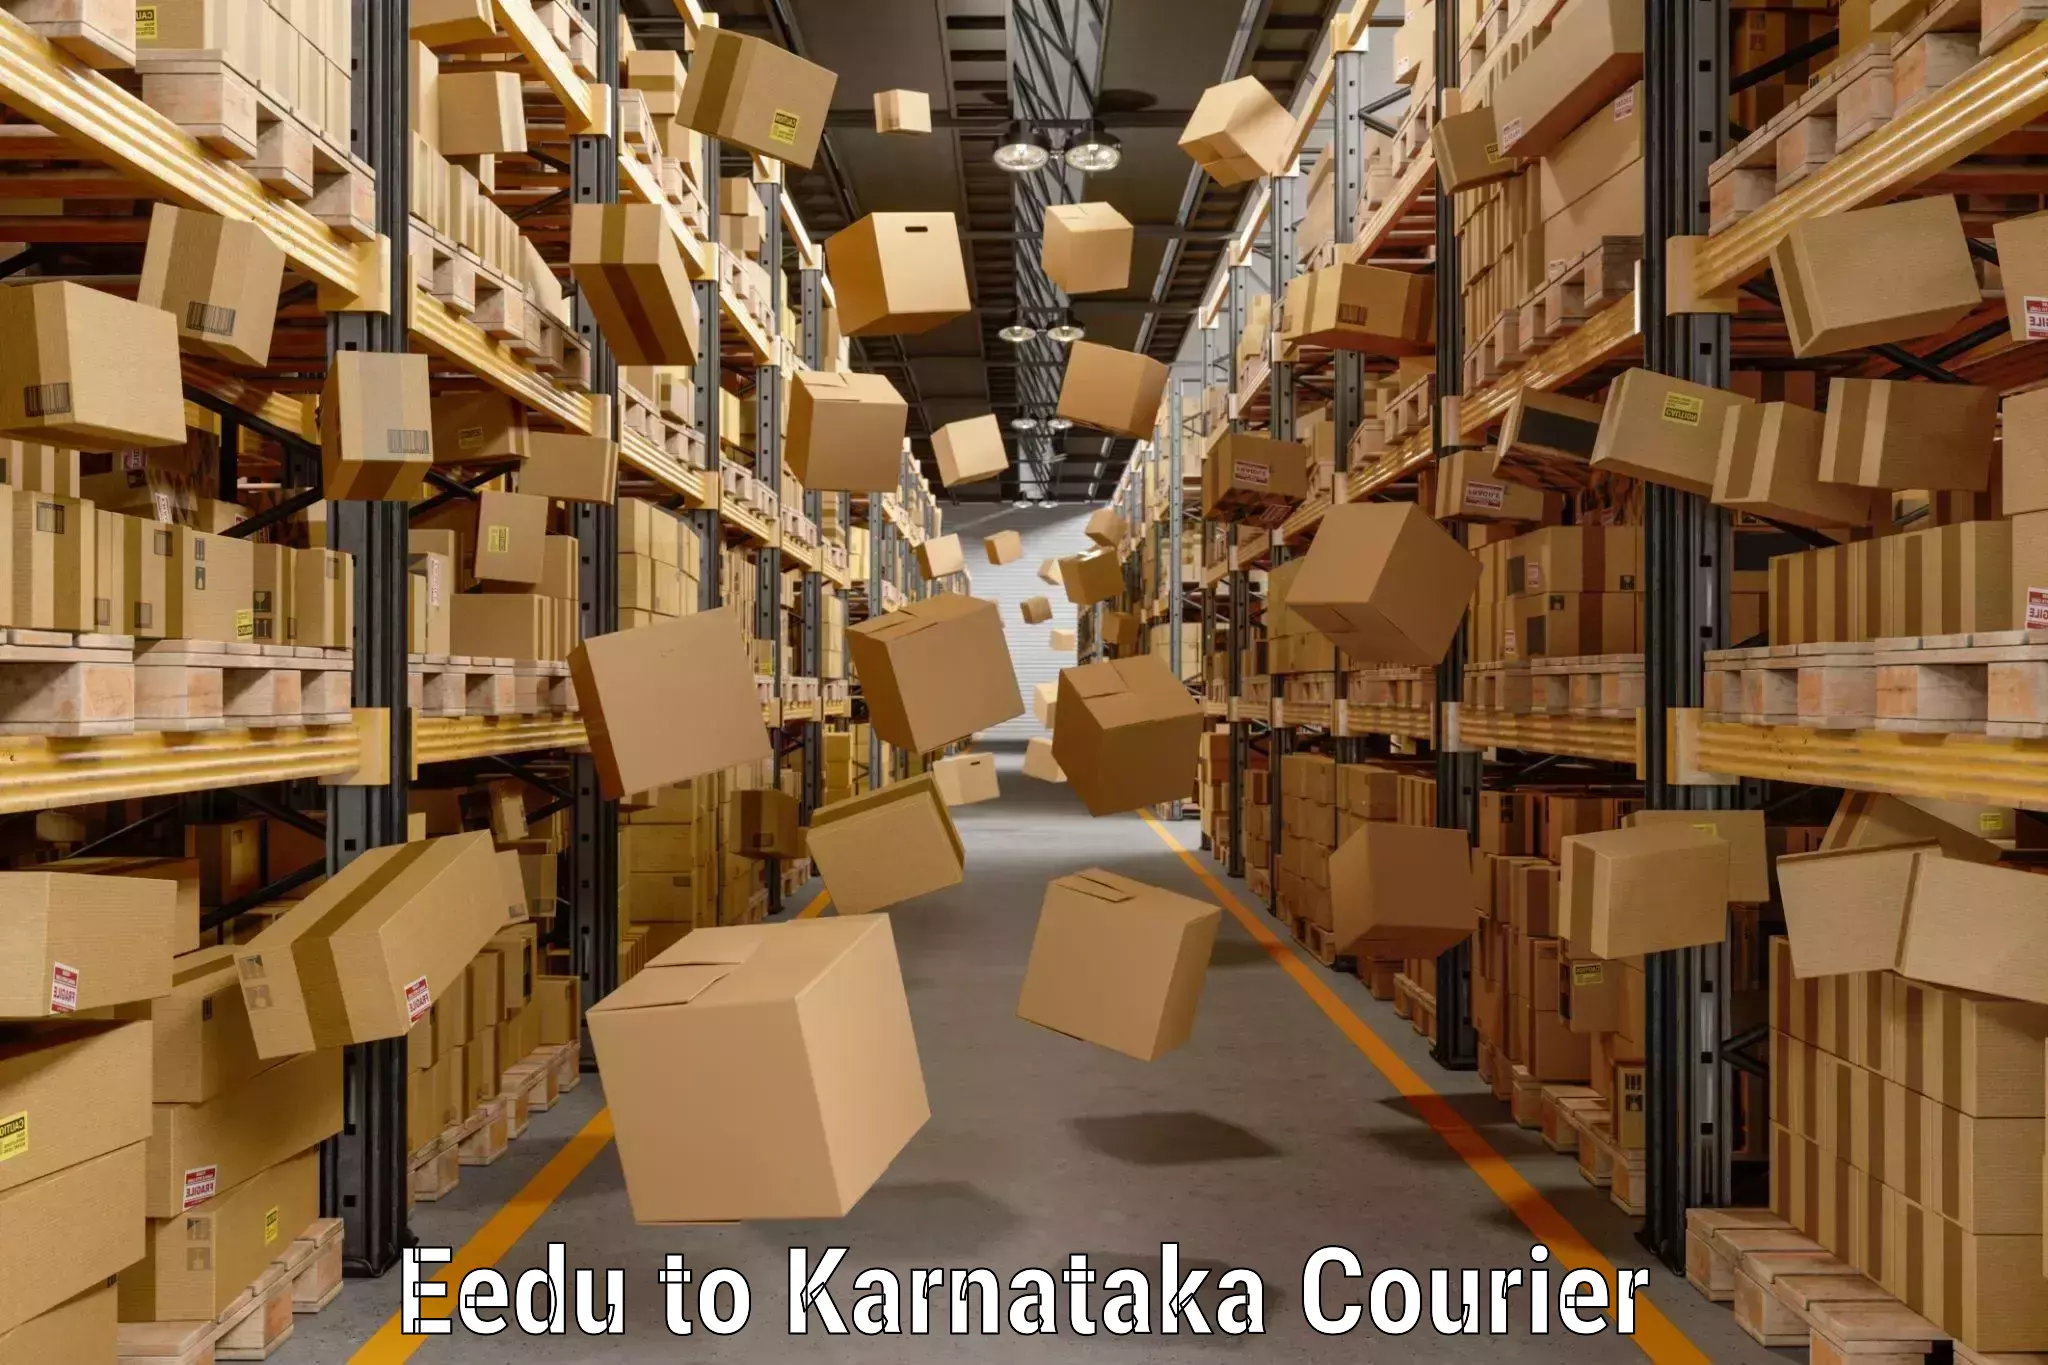 Excess baggage transport Eedu to Karnataka